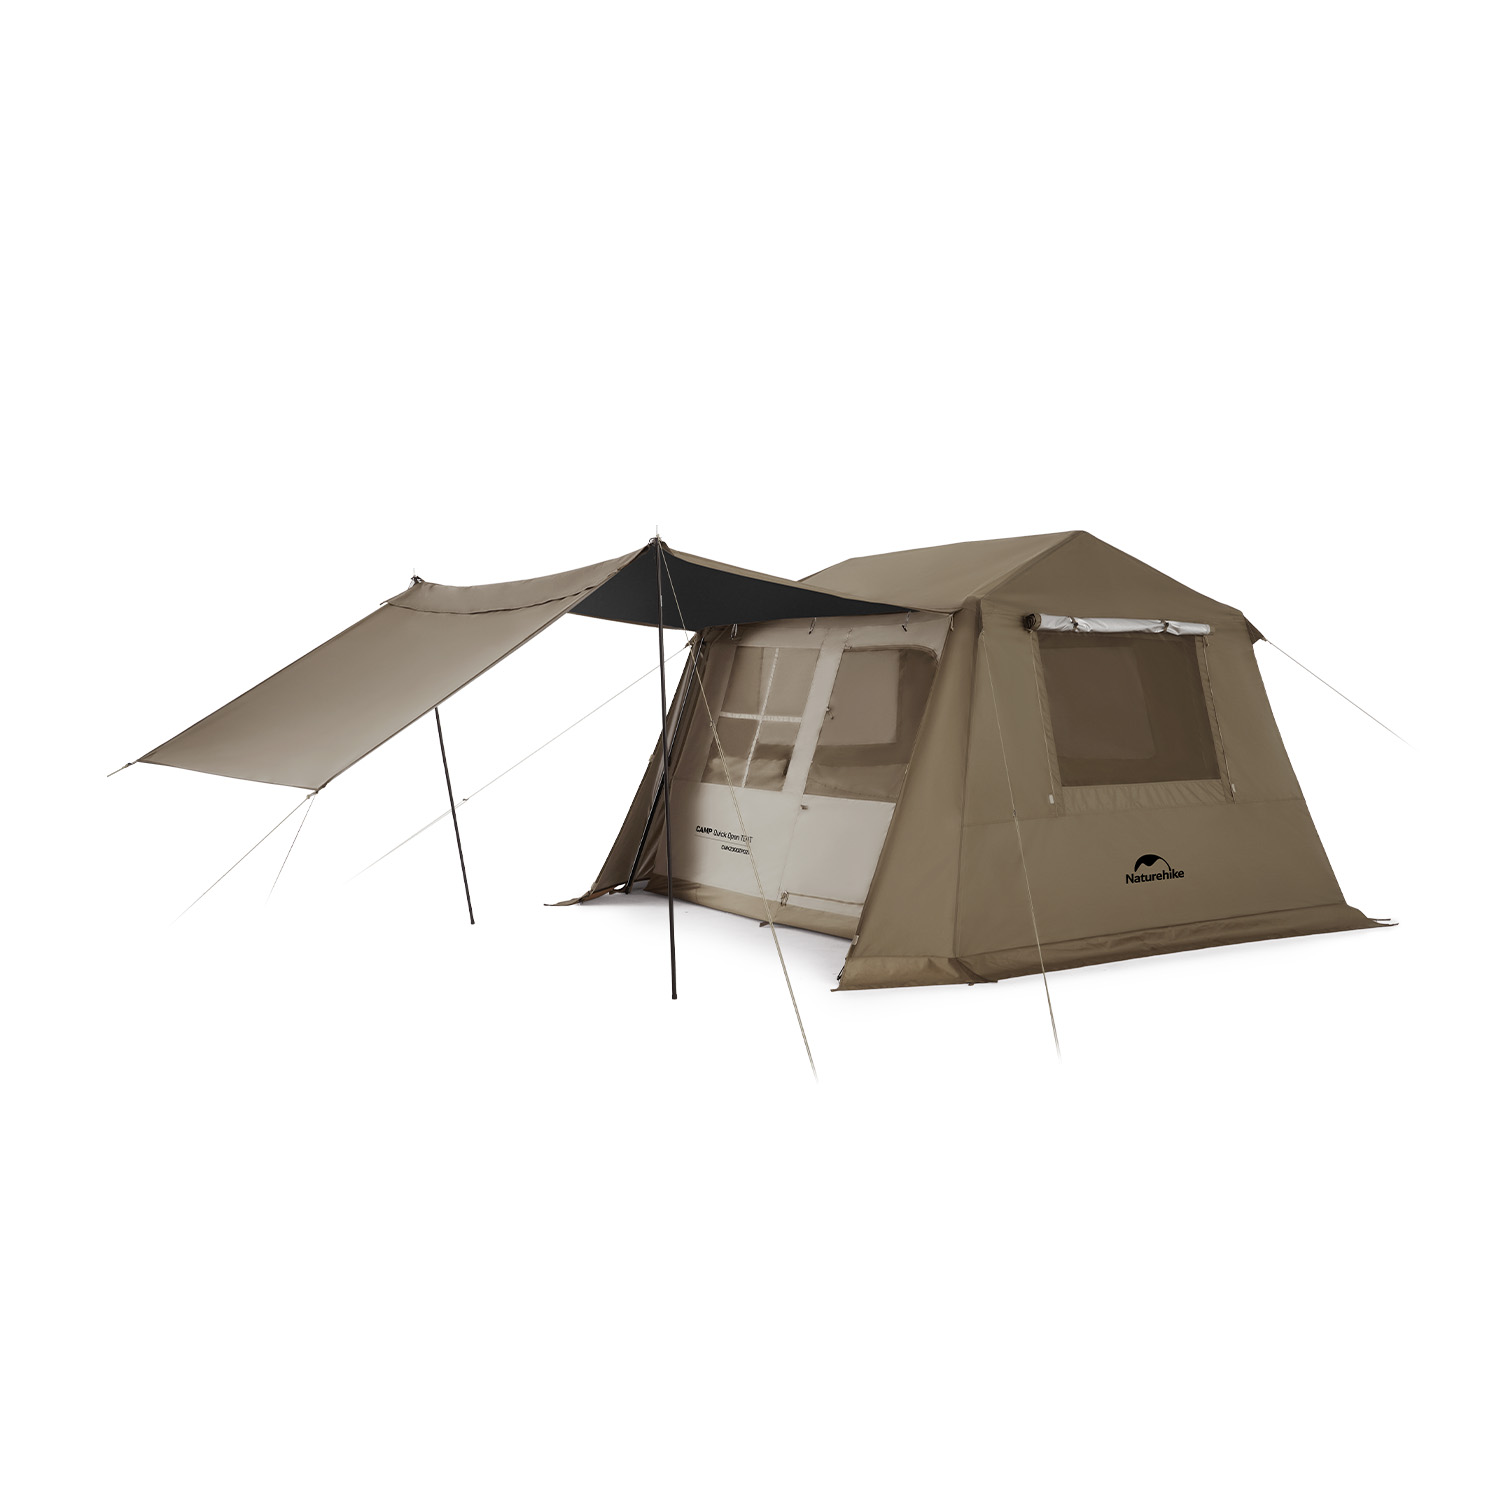 Naturehike Village6.0 ワンタッチ テント 4~6人用 Ti Black新型素材 UPF12500+ 拡張キャノピー キャンプ ロッジ型